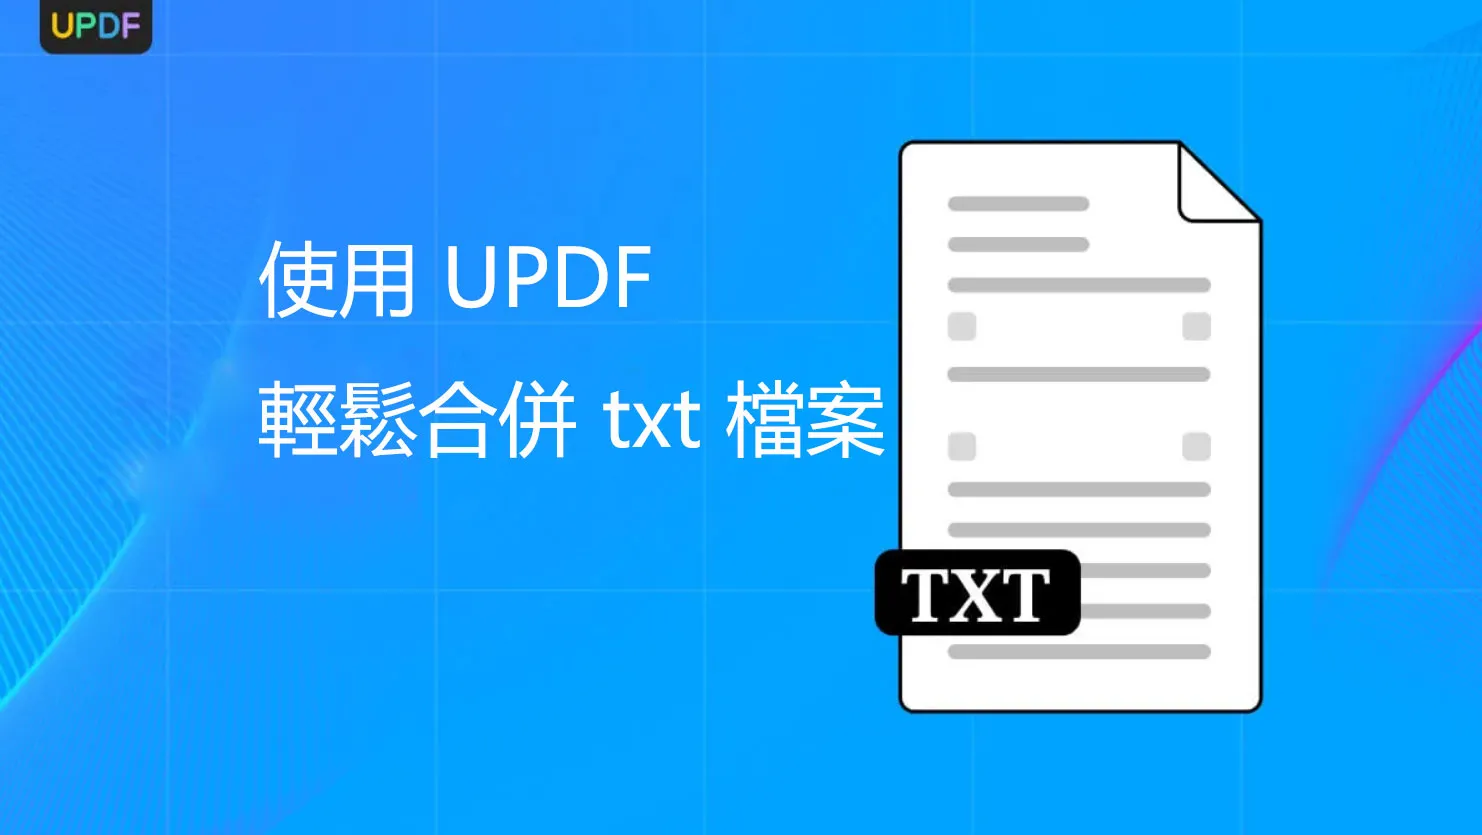 簡化您的工作流程：使用 UPDF 輕鬆合併 txt 檔案